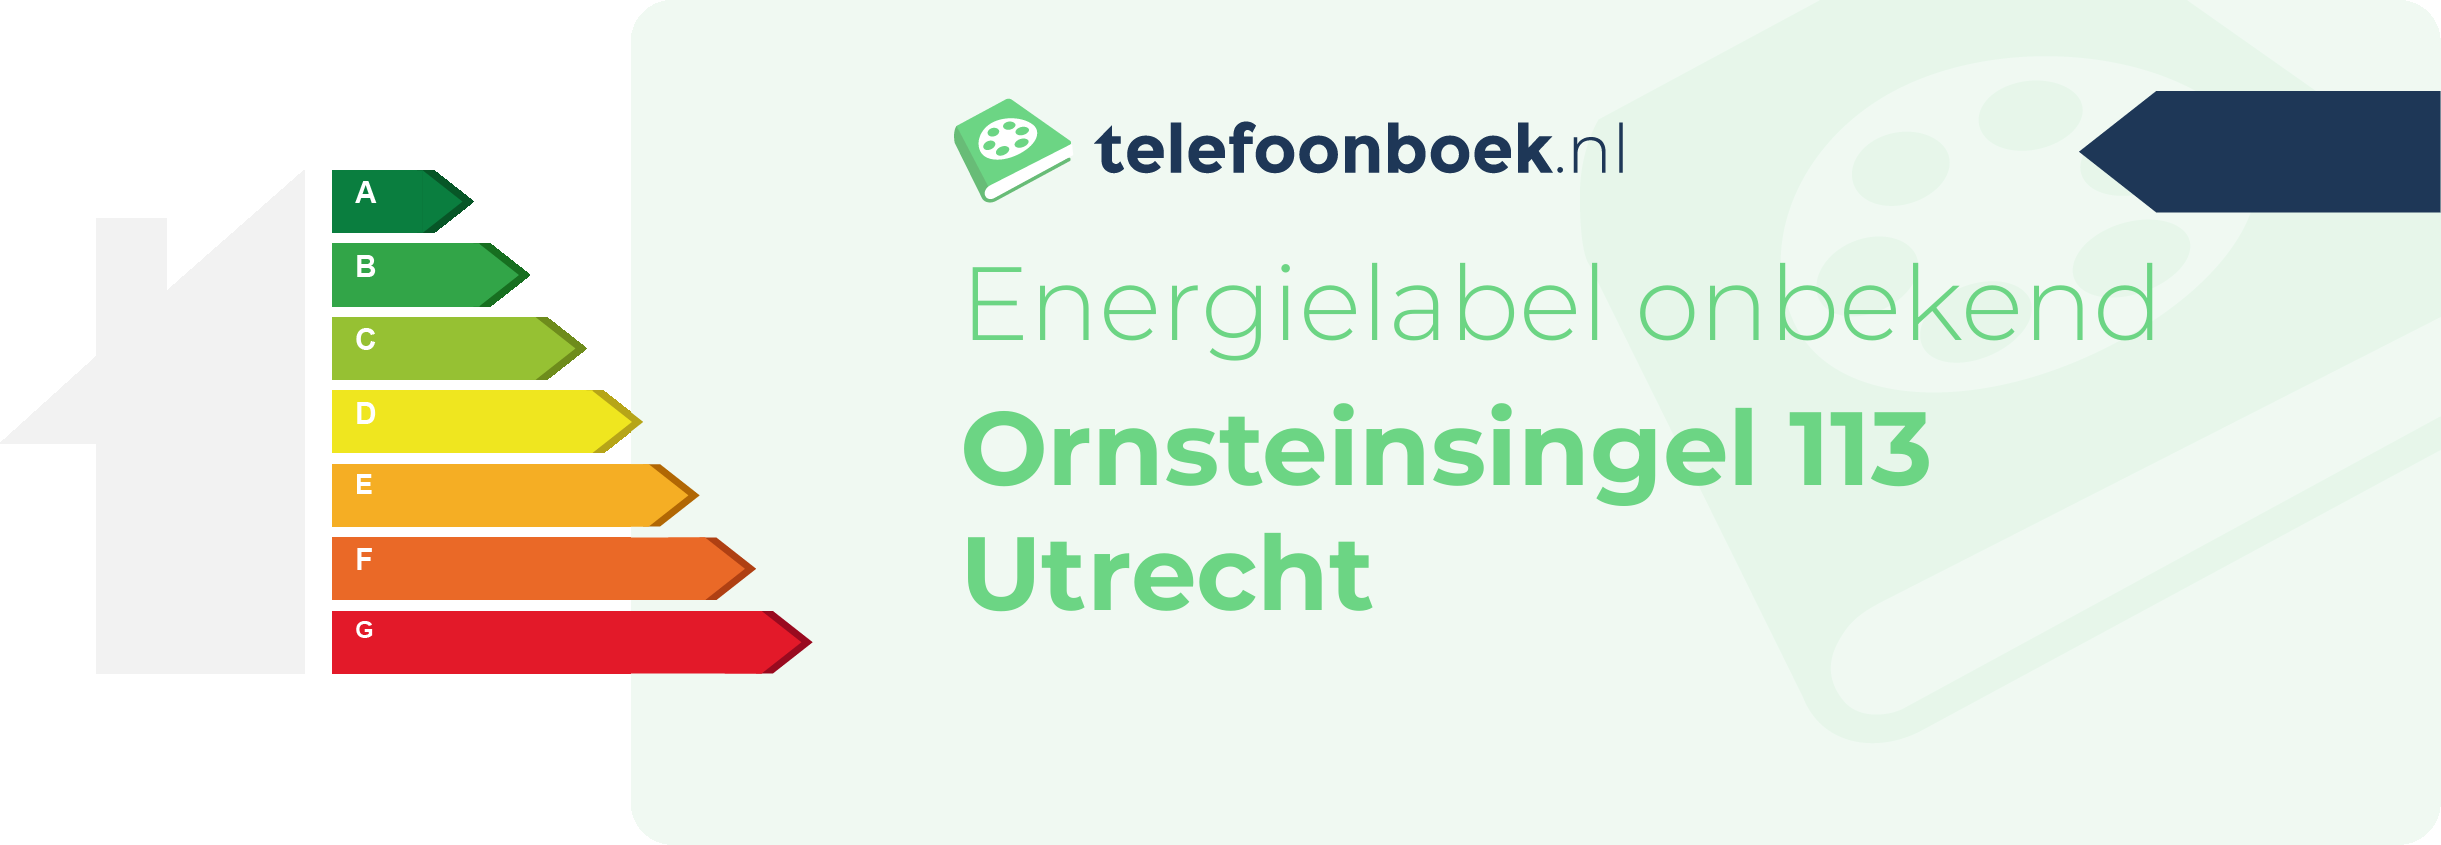 Energielabel Ornsteinsingel 113 Utrecht